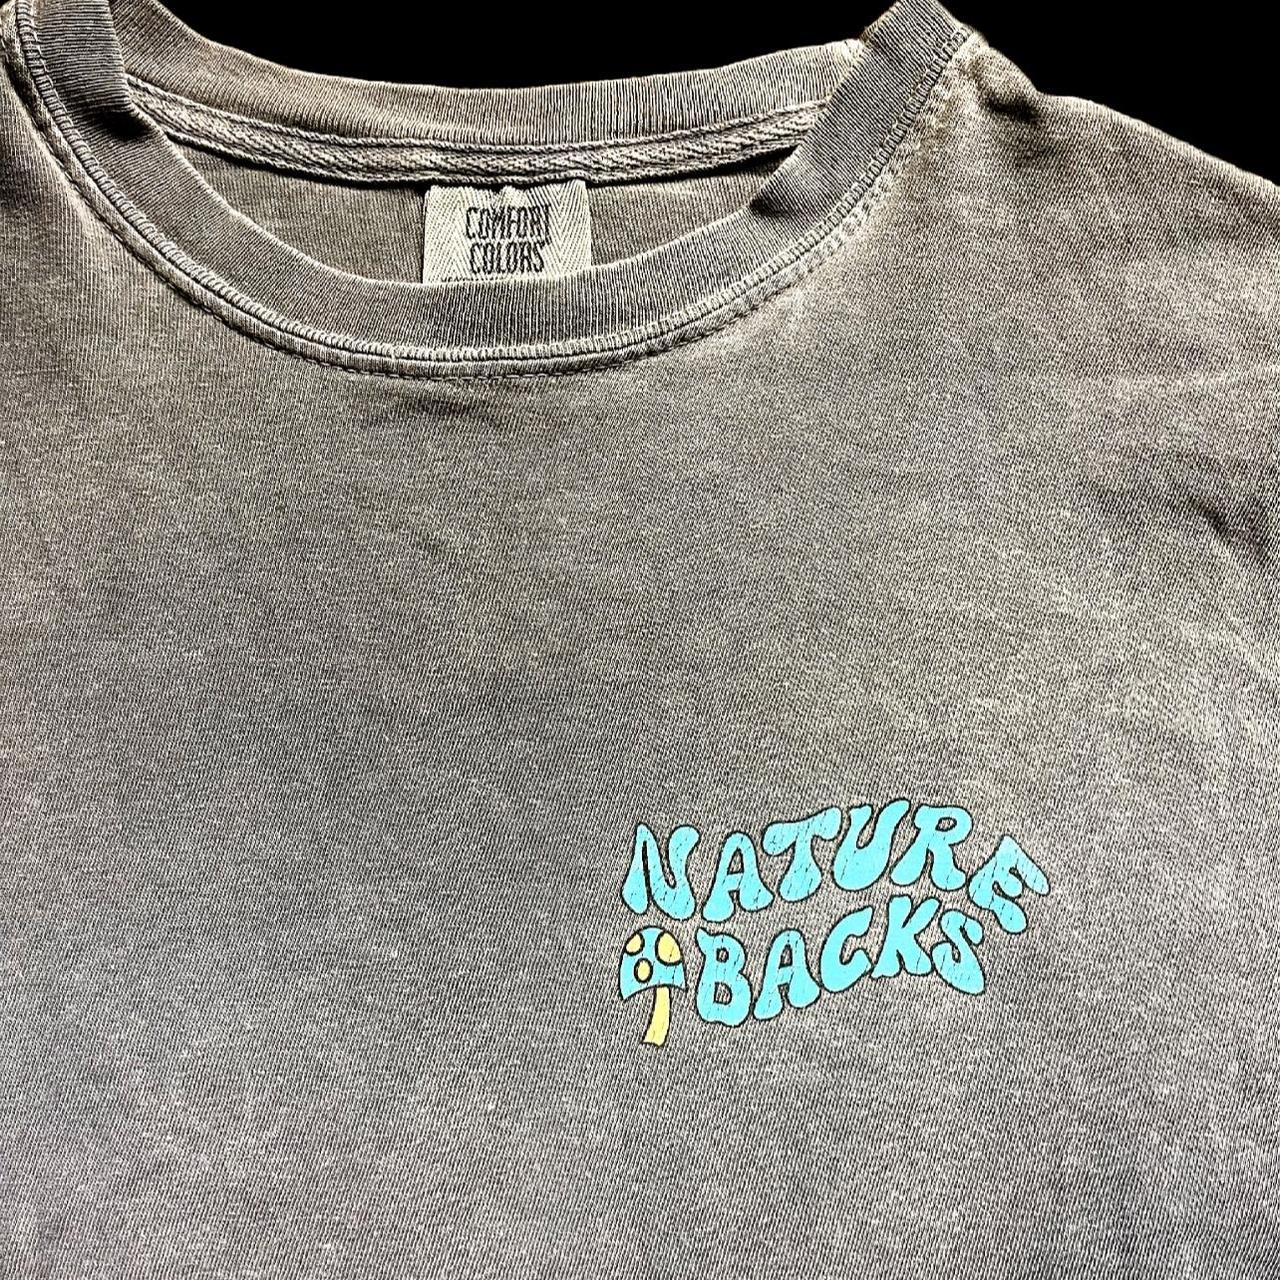 Product Image 4 - Retro Nature Backs T-Shirt, Men’s